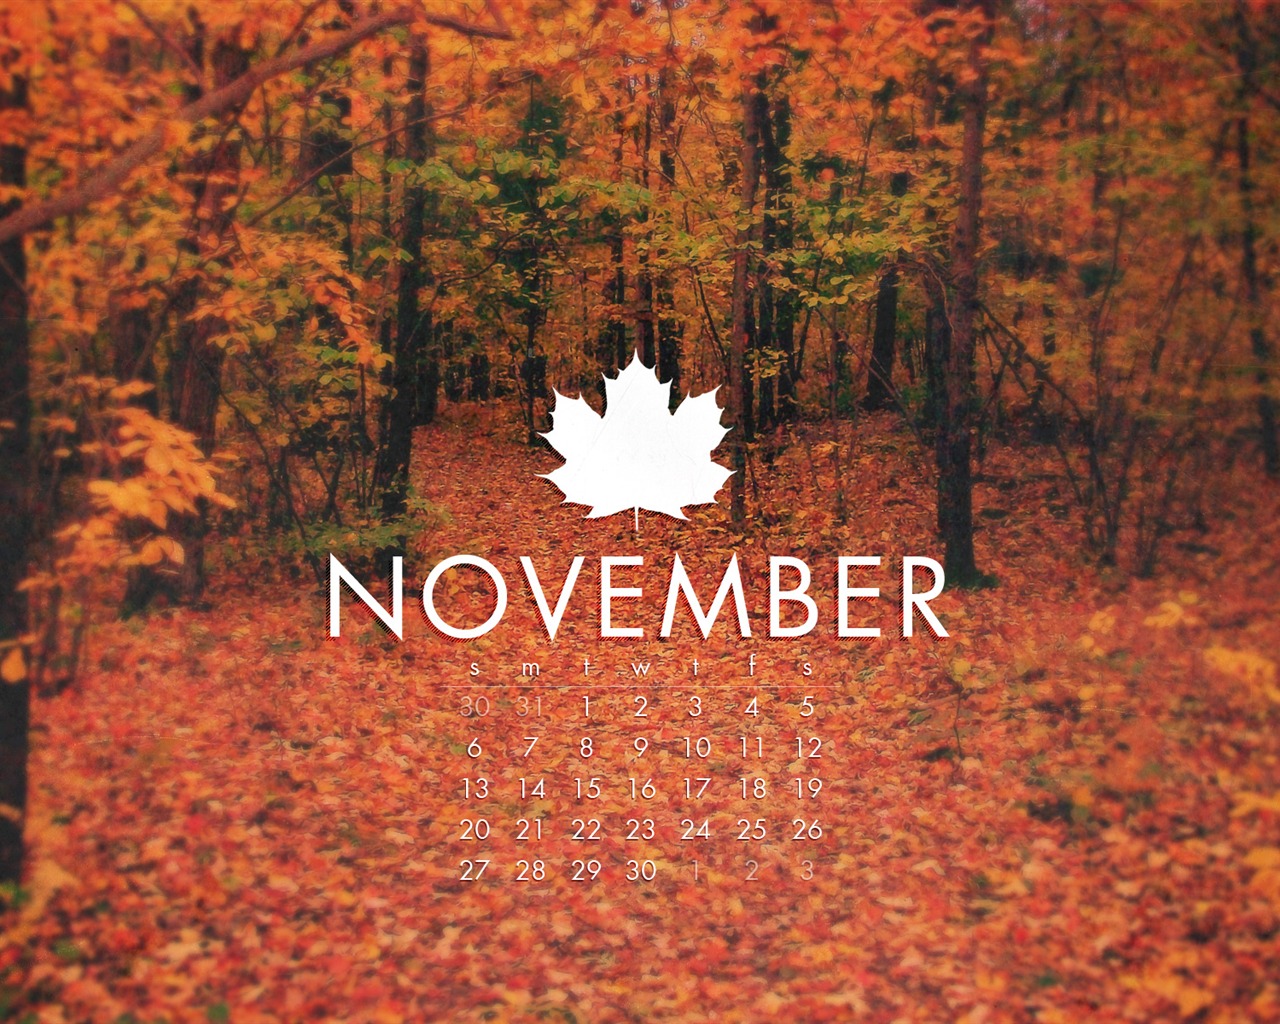 Novembre 2011 Calendar Wallpaper (2) #11 - 1280x1024